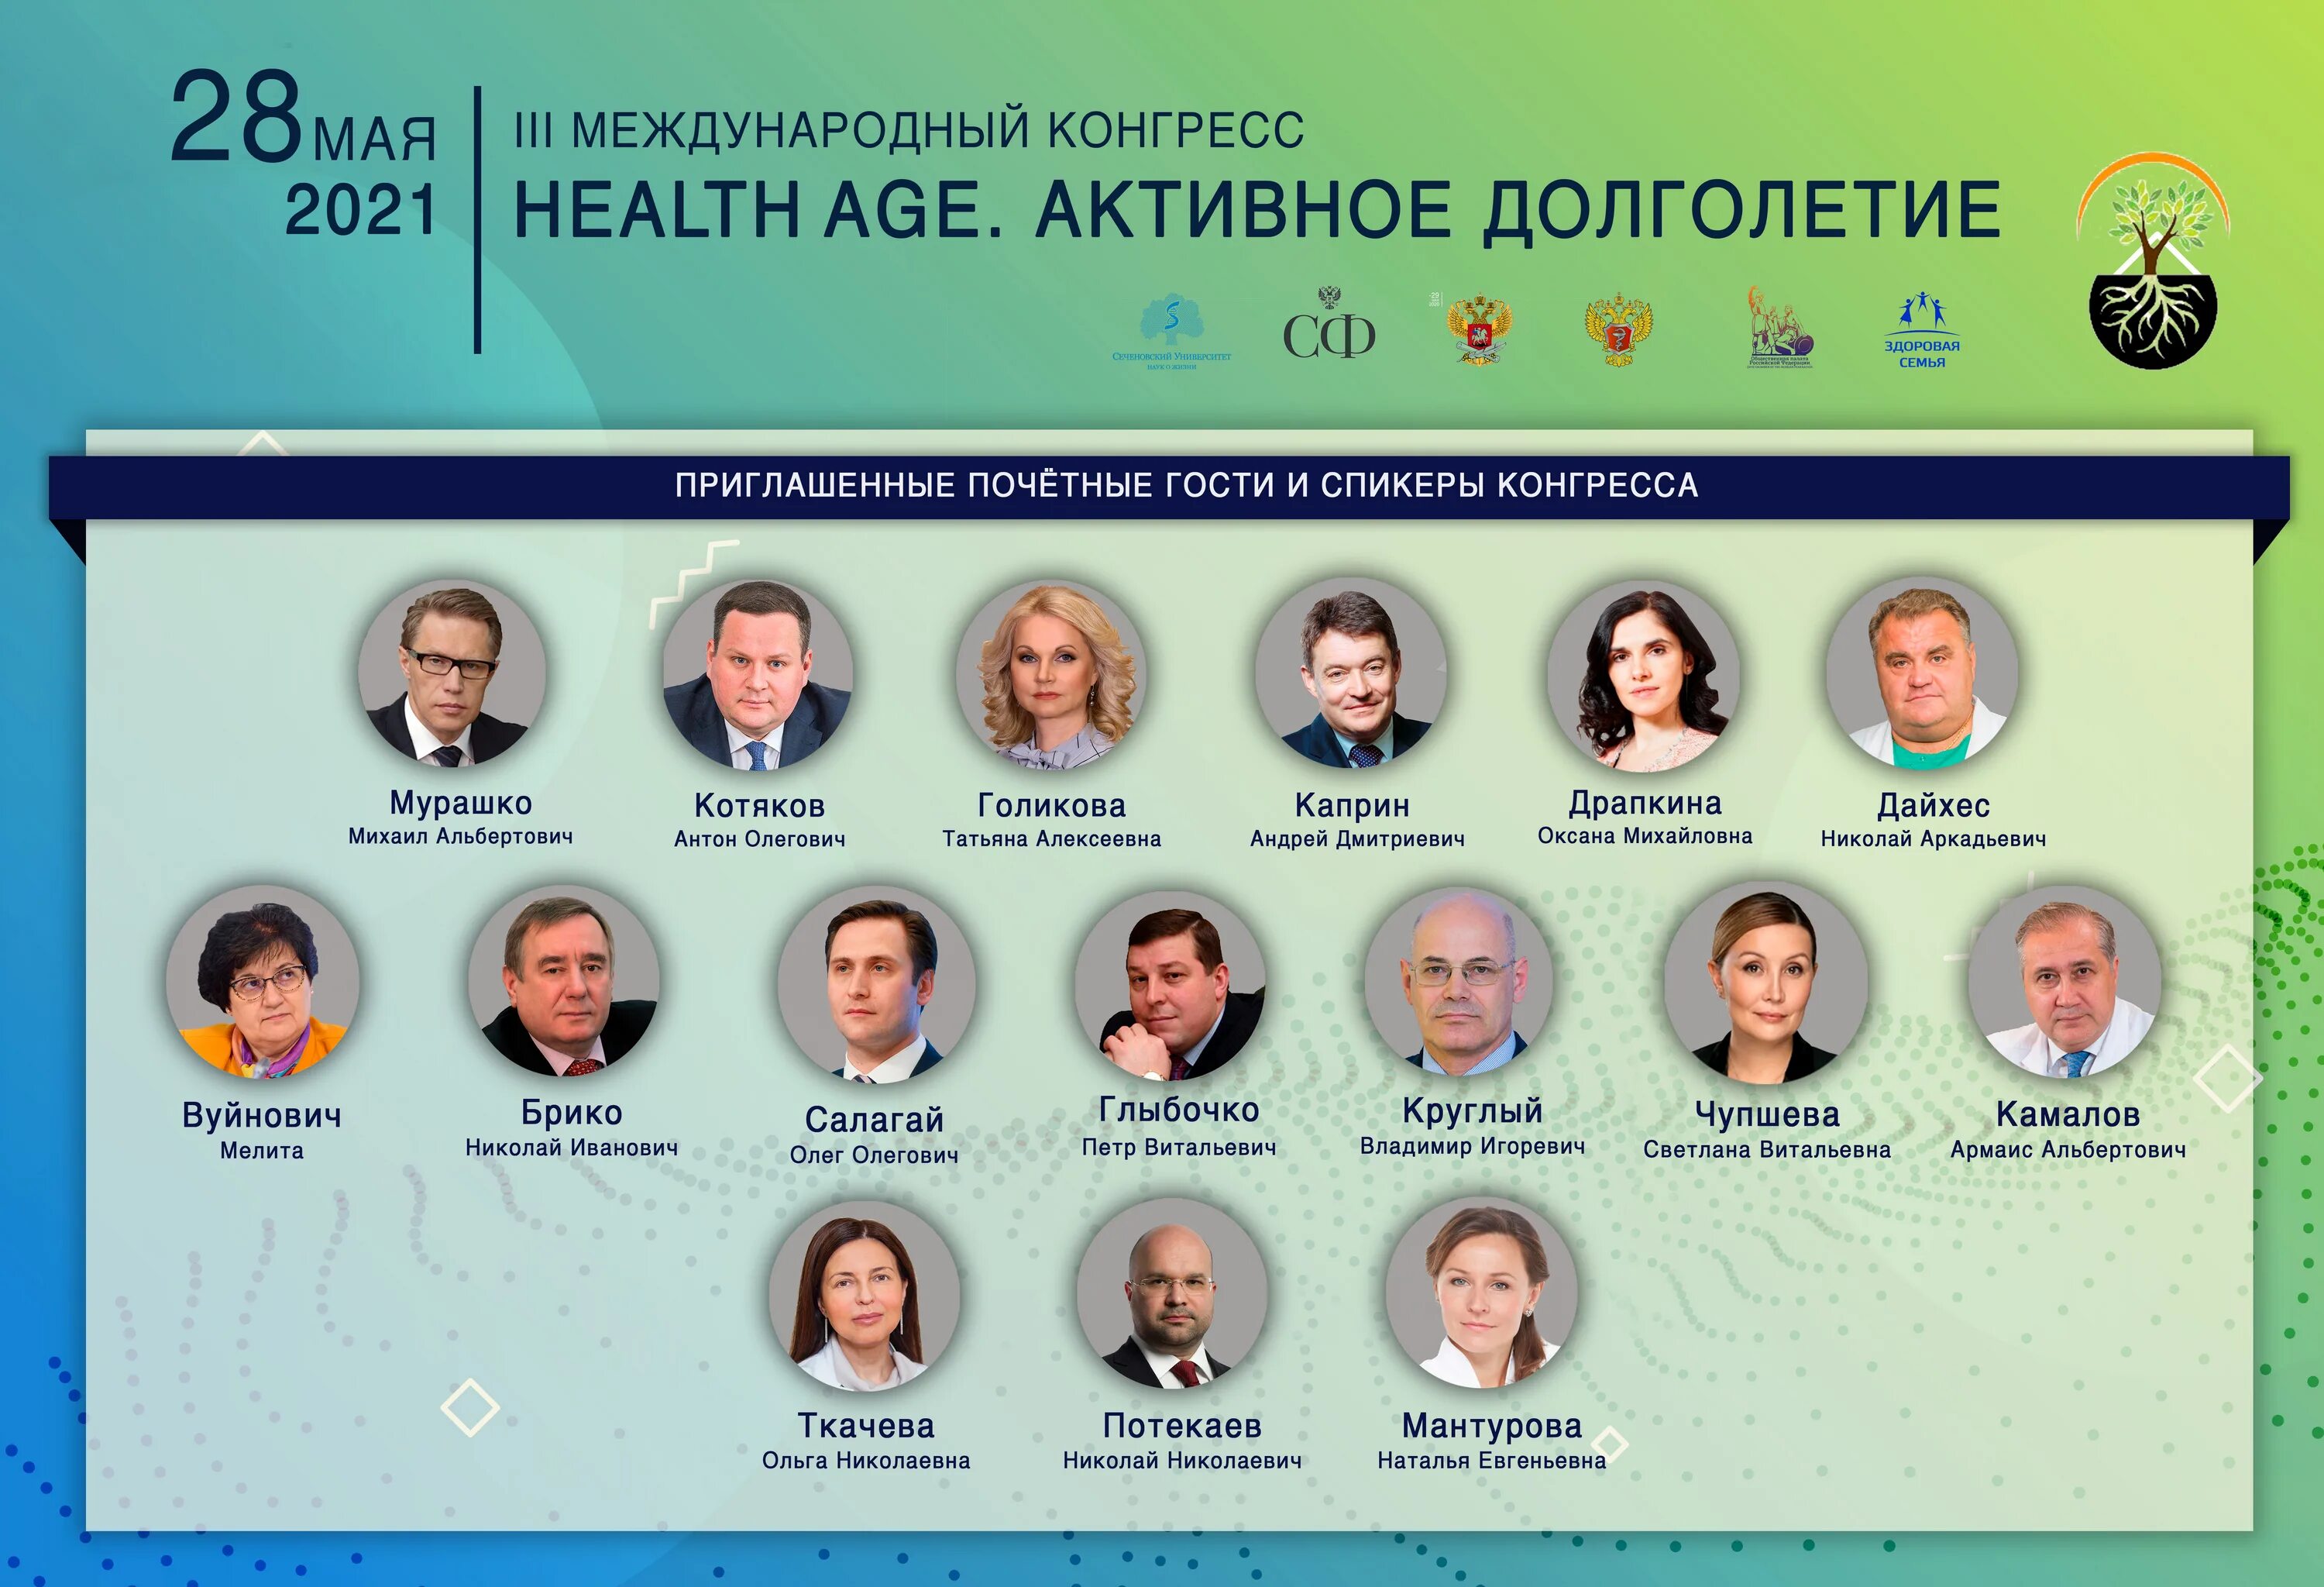 Долголетие новосибирск. Health age 2023. Профессия и здоровье конгресс. Активное долголетие Новосибирск.